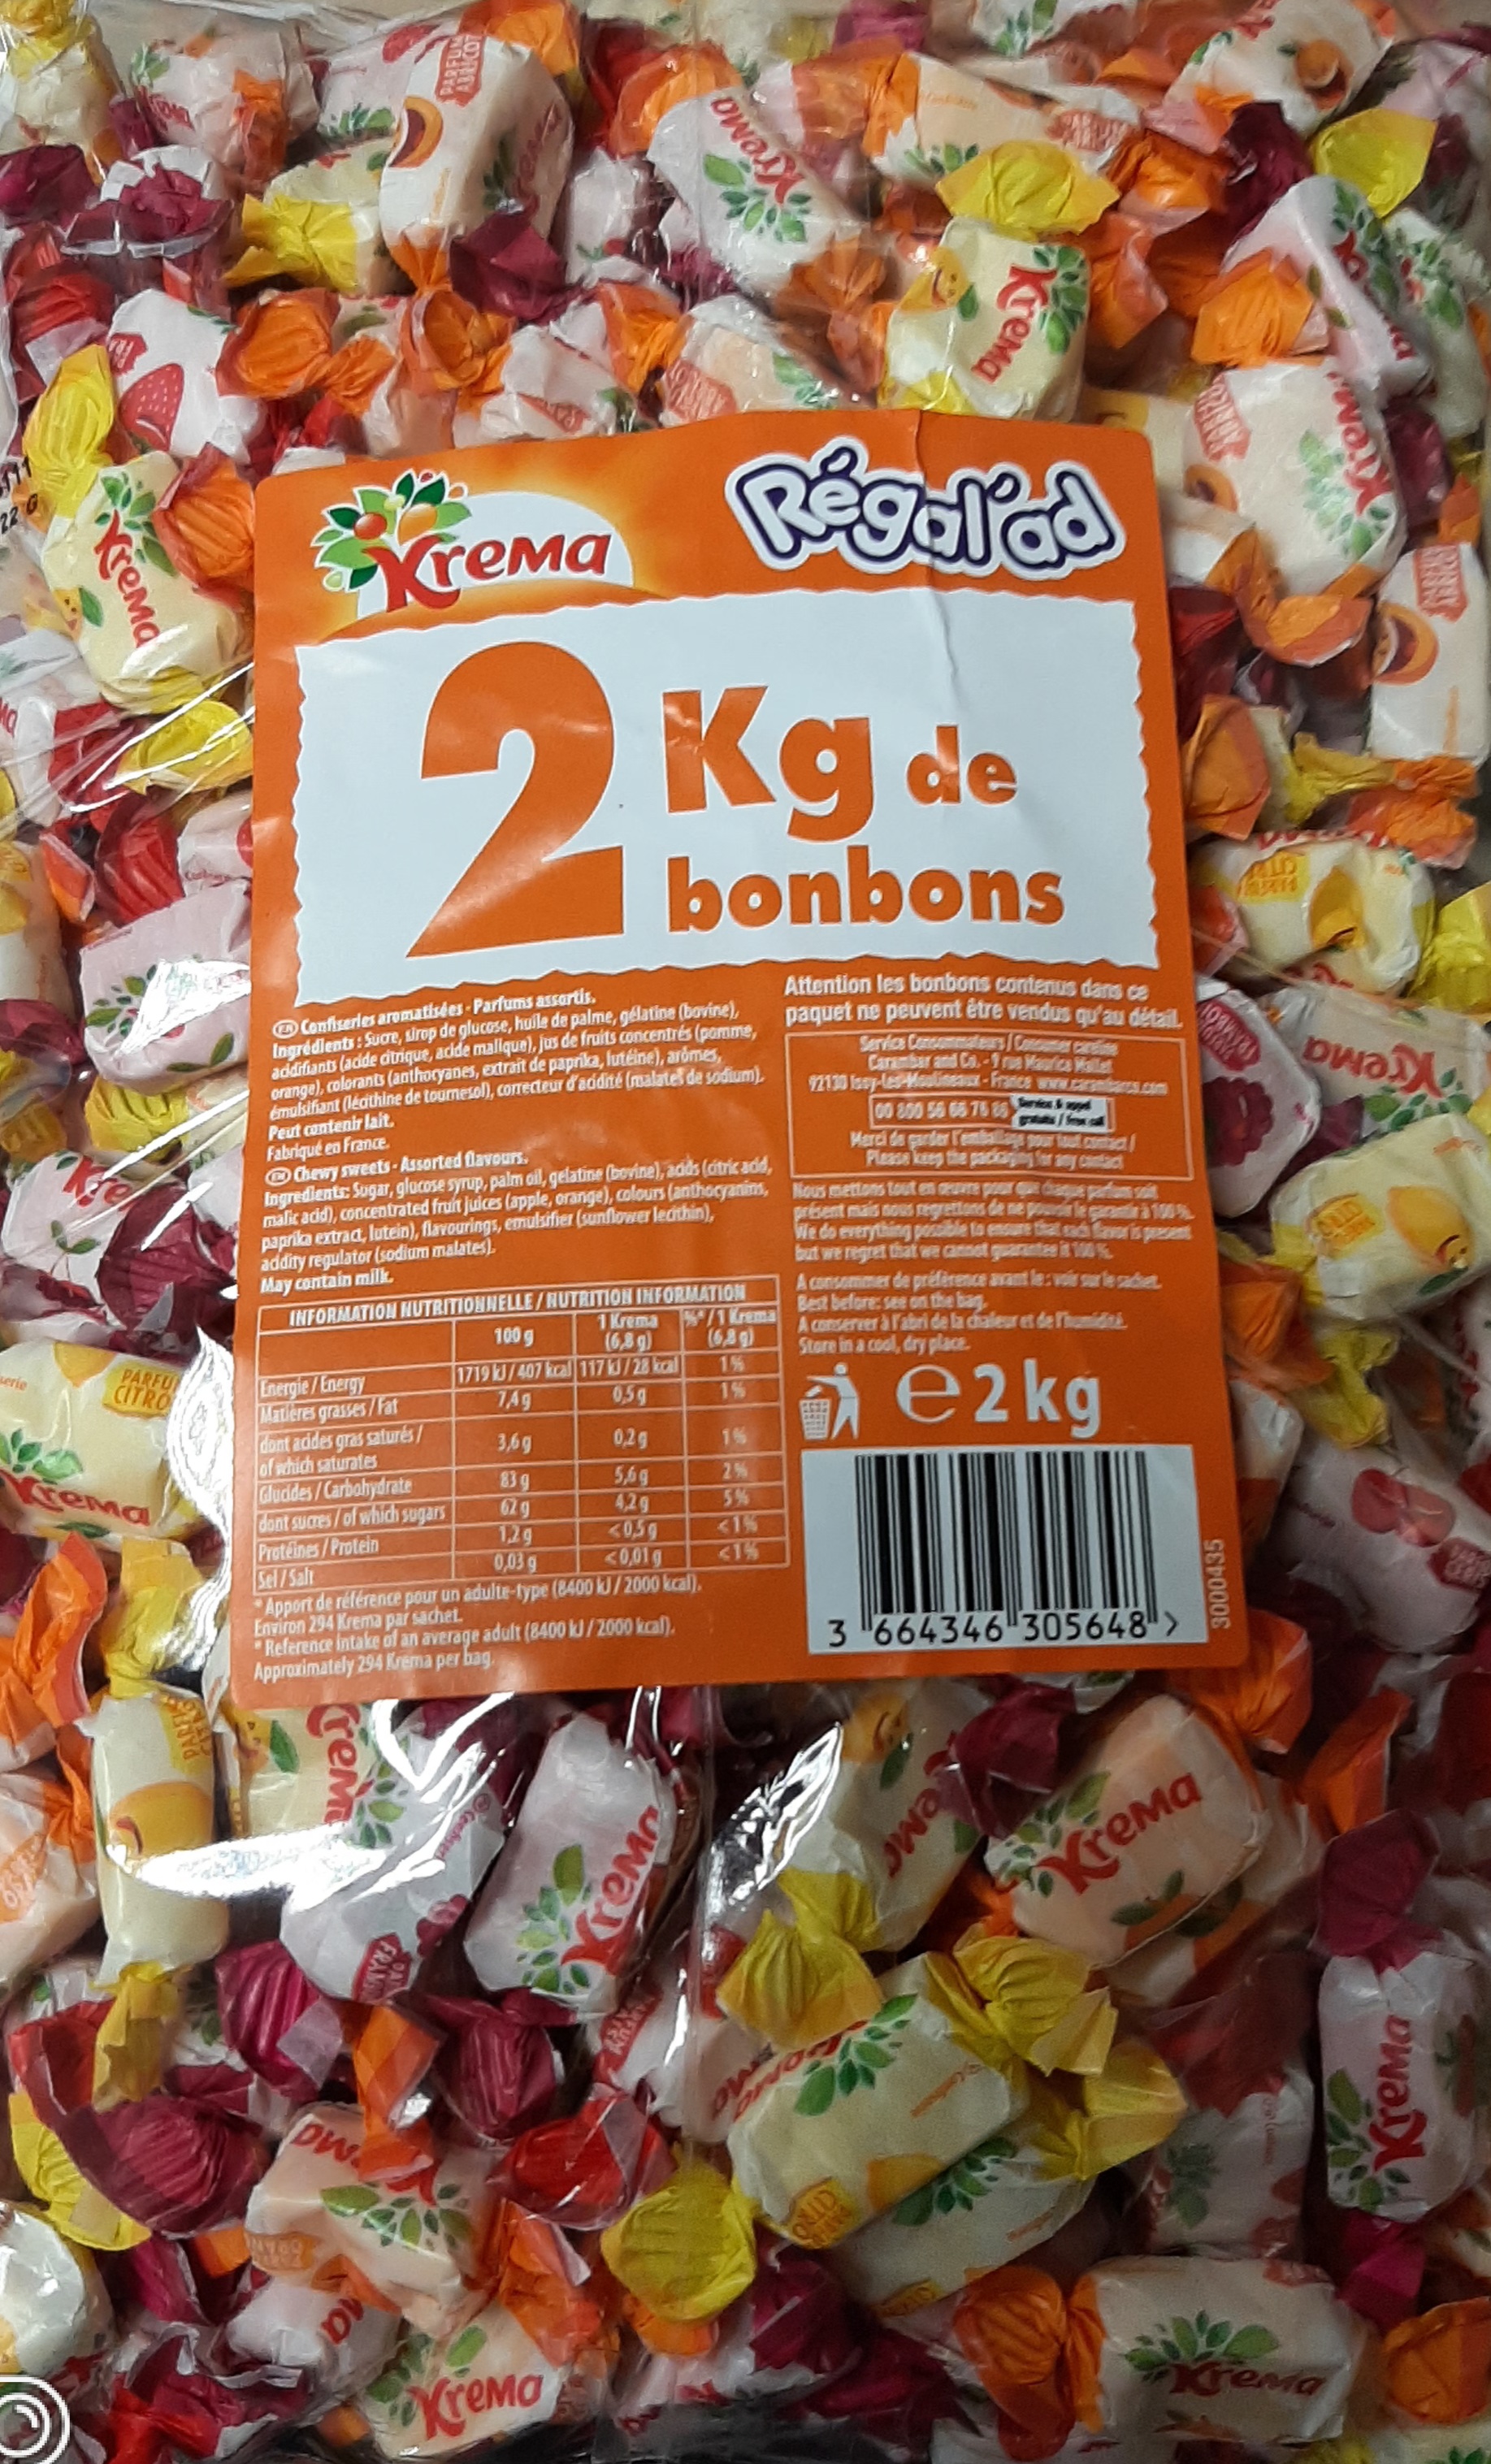 Bonbon Regalad Krema 2kg - Assortiment de bonbons Krema